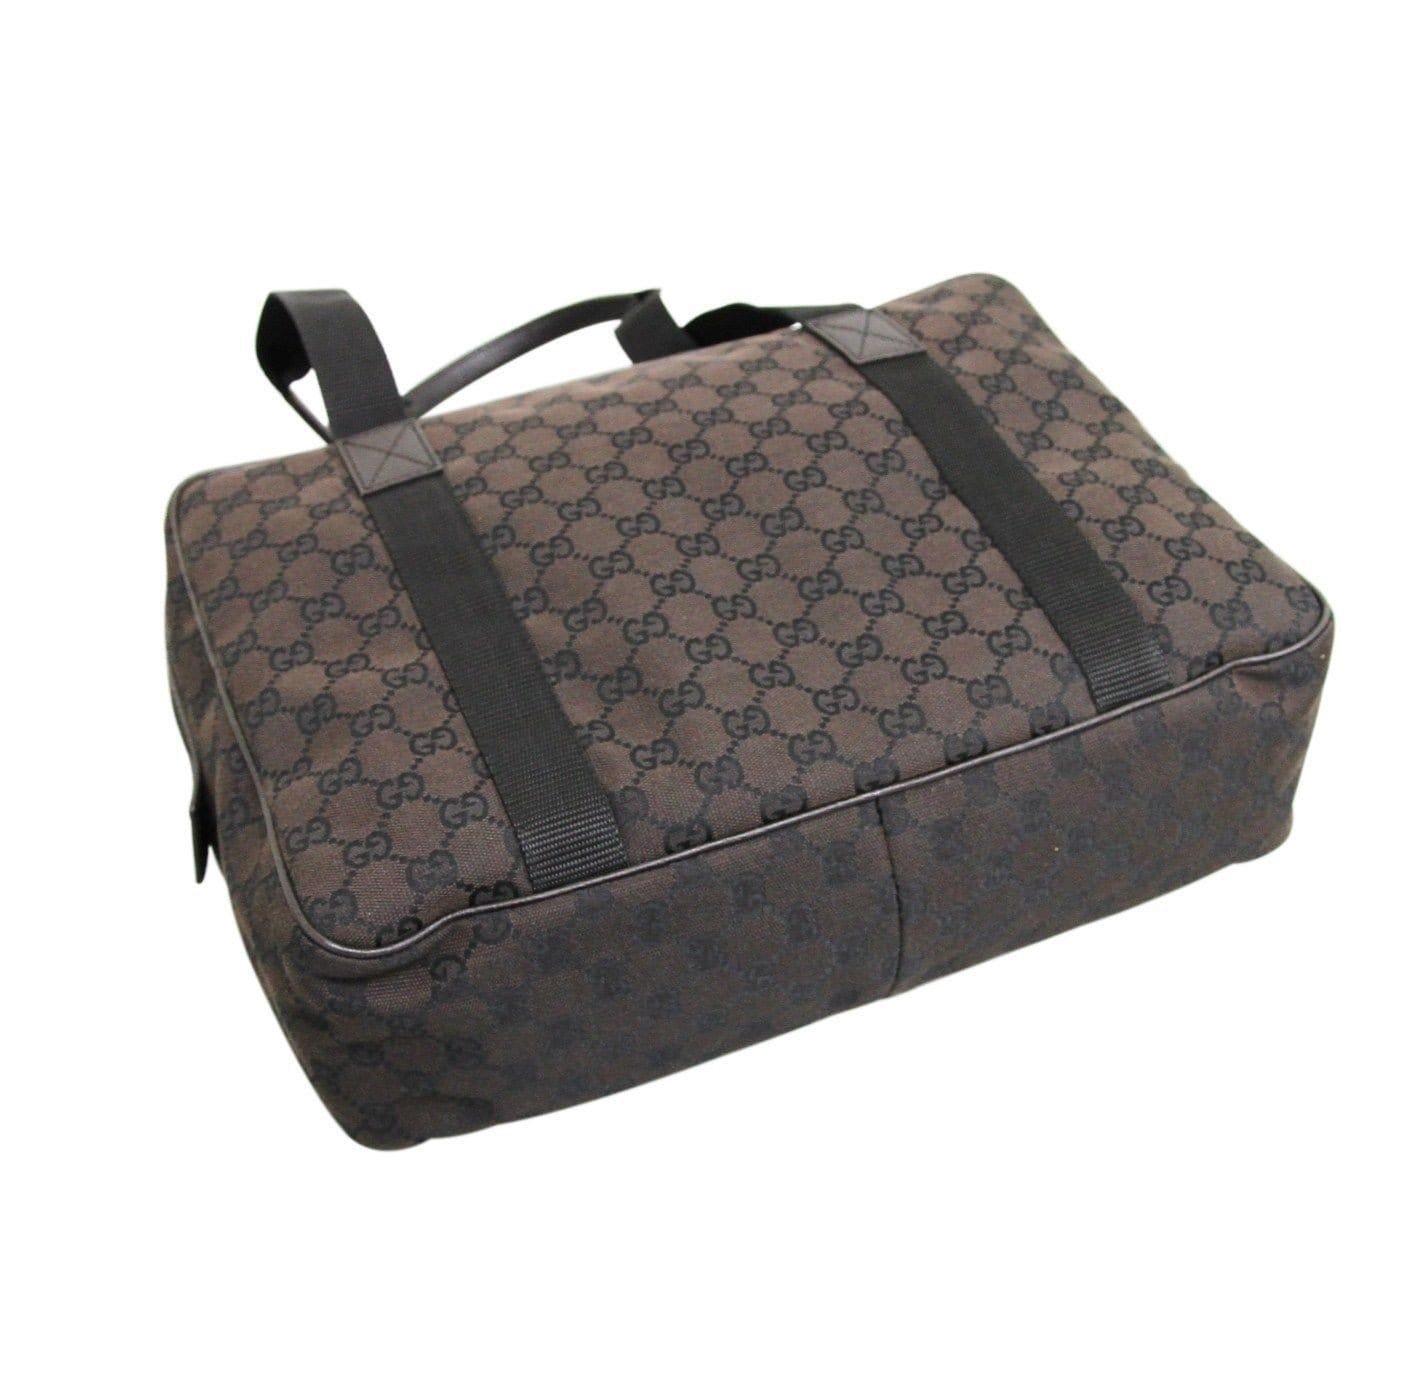 Gucci authentic designer handbags